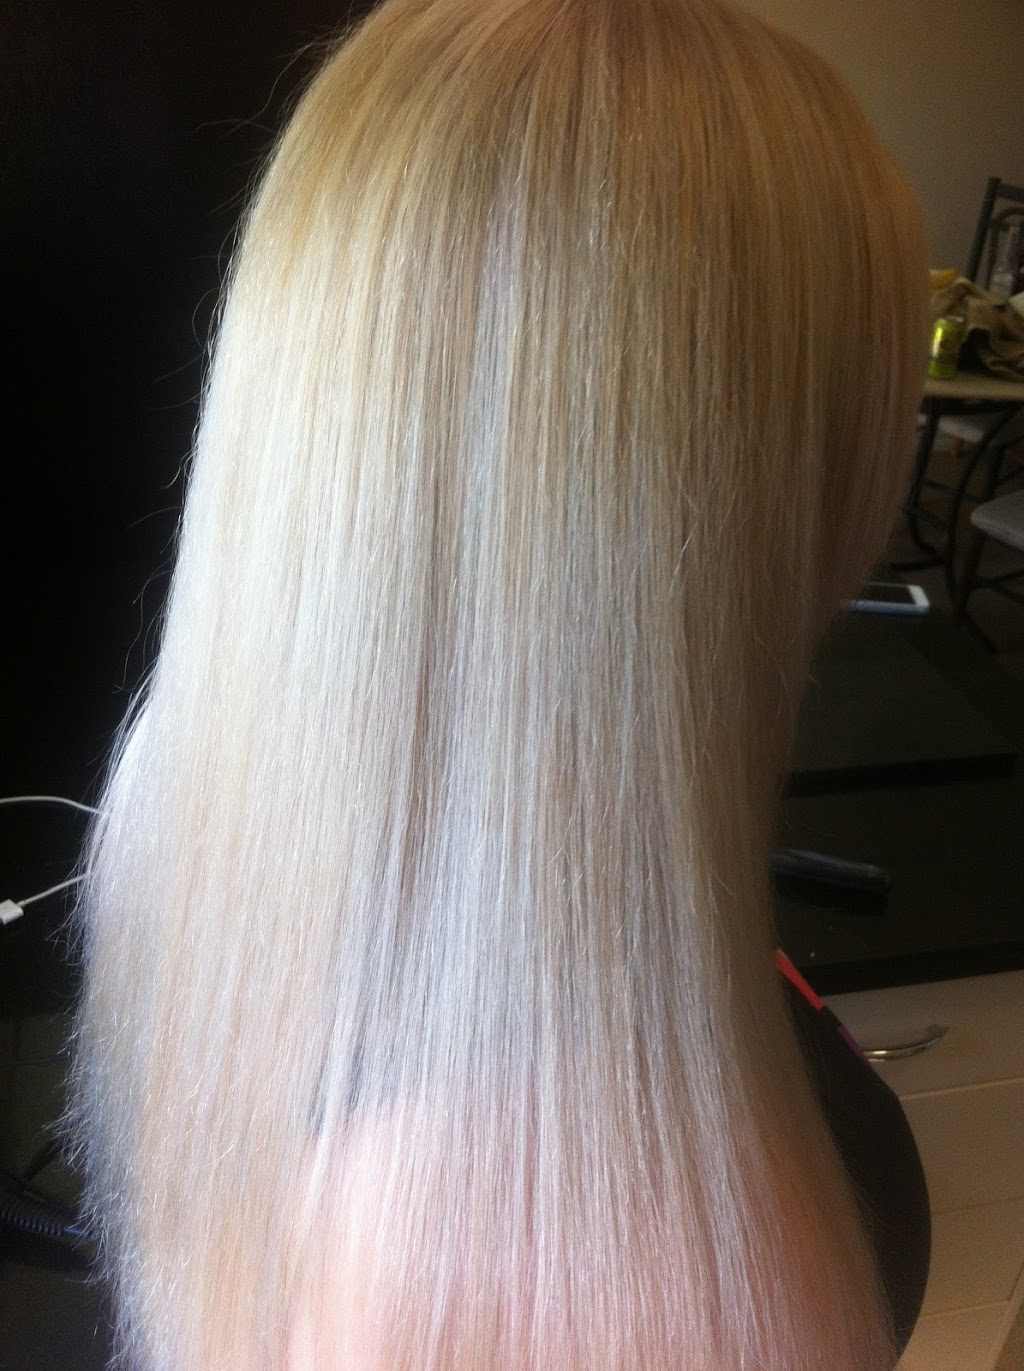 Danielles Hair Design | 1 Trevino Pl, Wacol QLD 4076, Australia | Phone: 0478 143 135